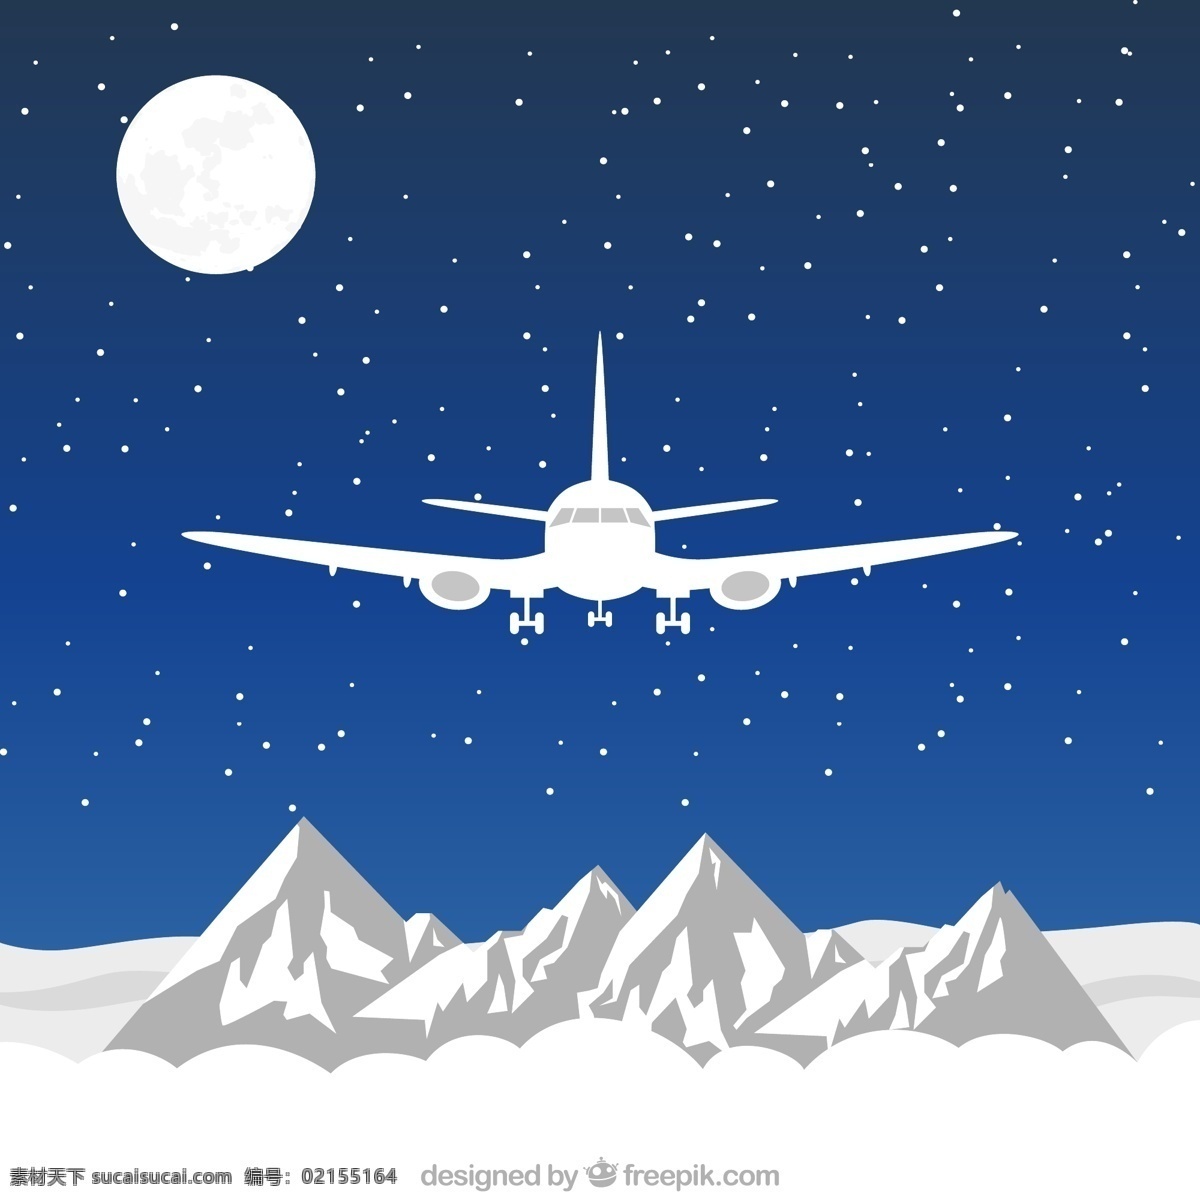 飞越 雪山 飞机图片 山脉 飞机 月亮 矢量图 格式 矢量 高清图片